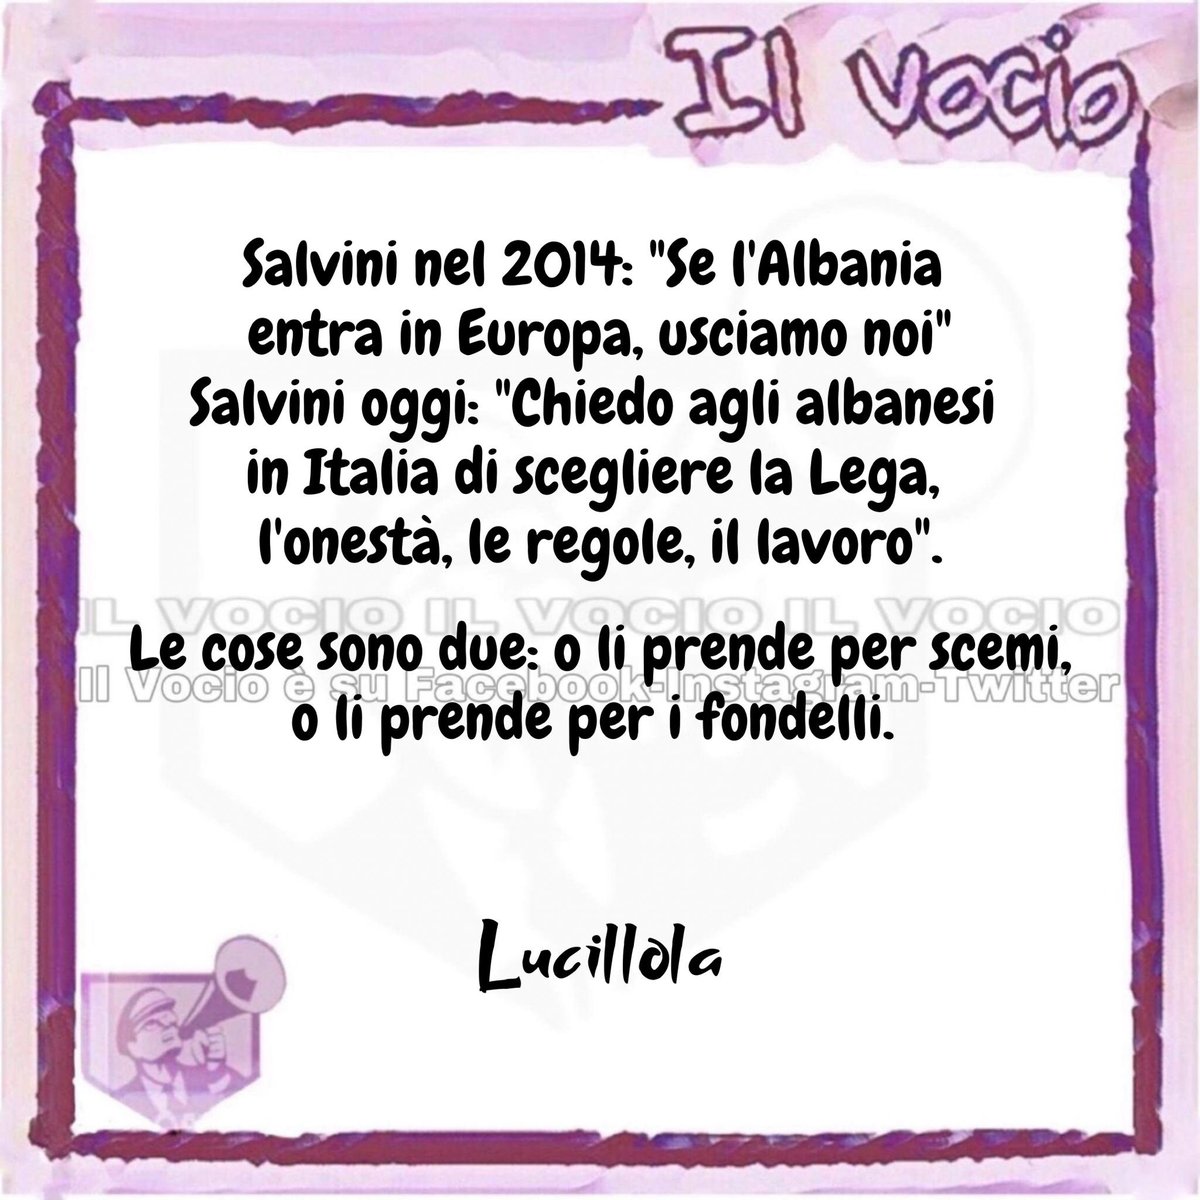 Lucillola @LucillaMasini 
#24settembre #ilvocio
 #Salvini #albania #elezioni #Lega #credo #salvinicredino